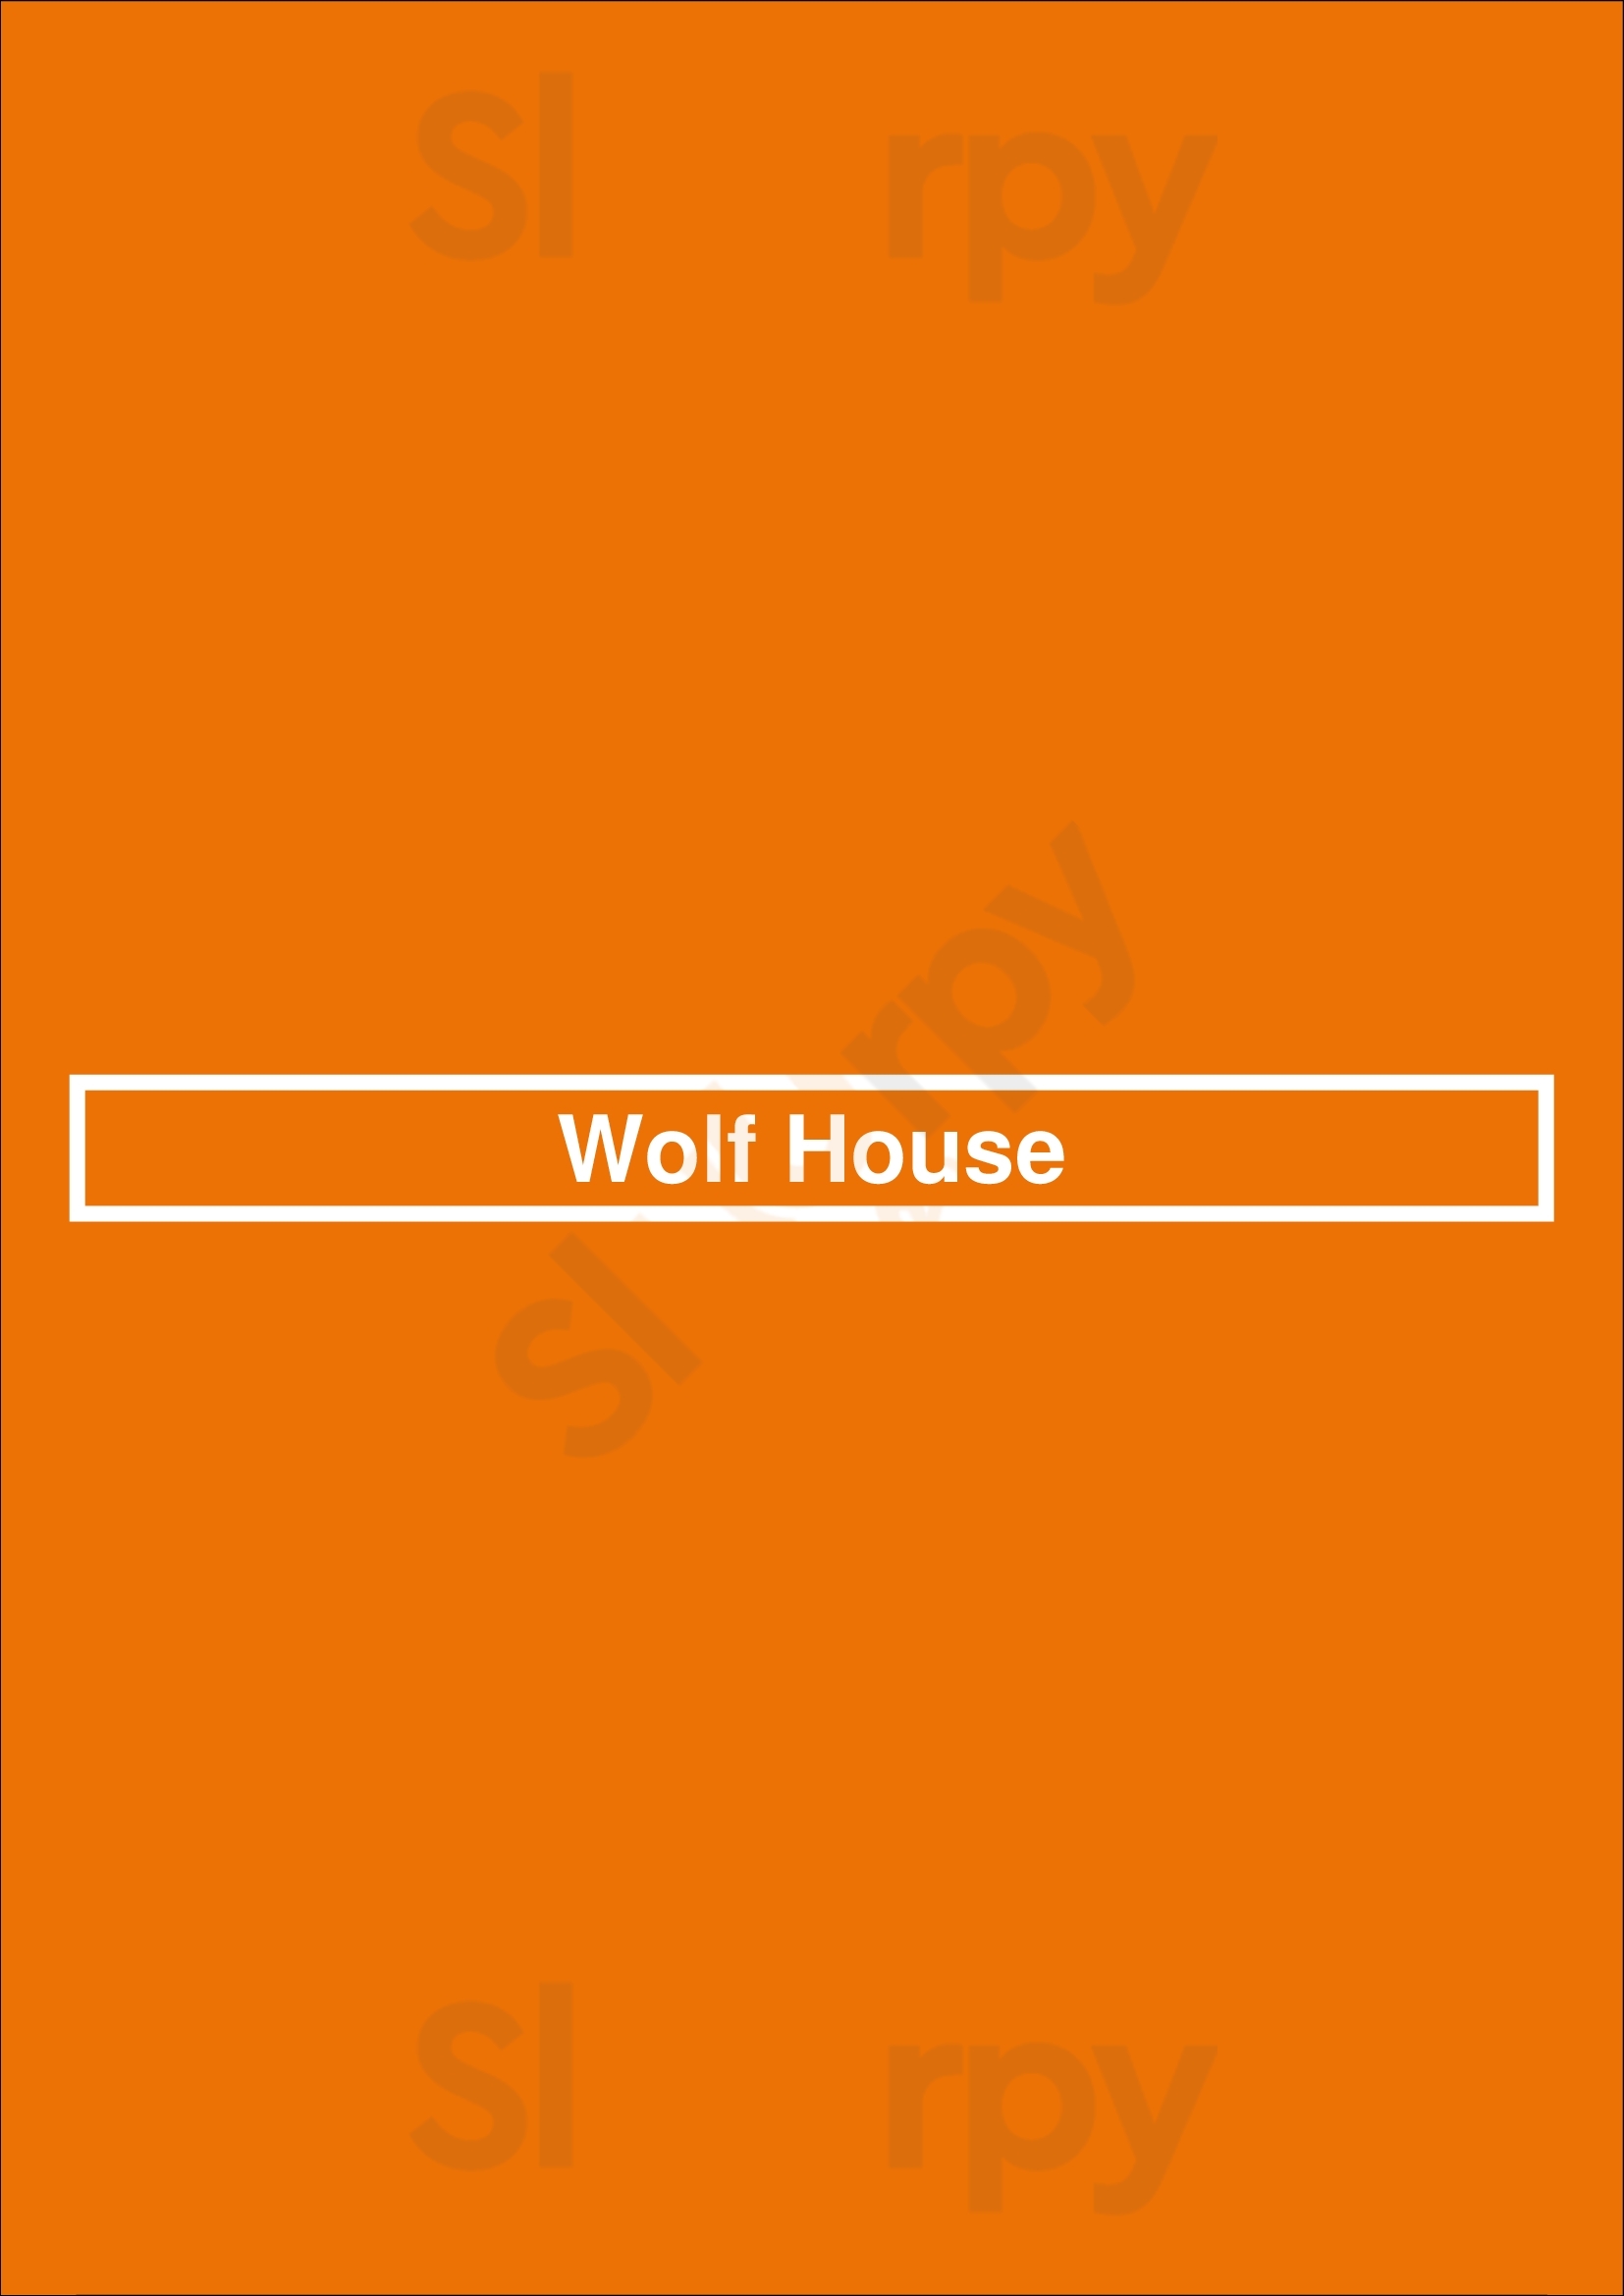 Wolf House Estepona Menu - 1